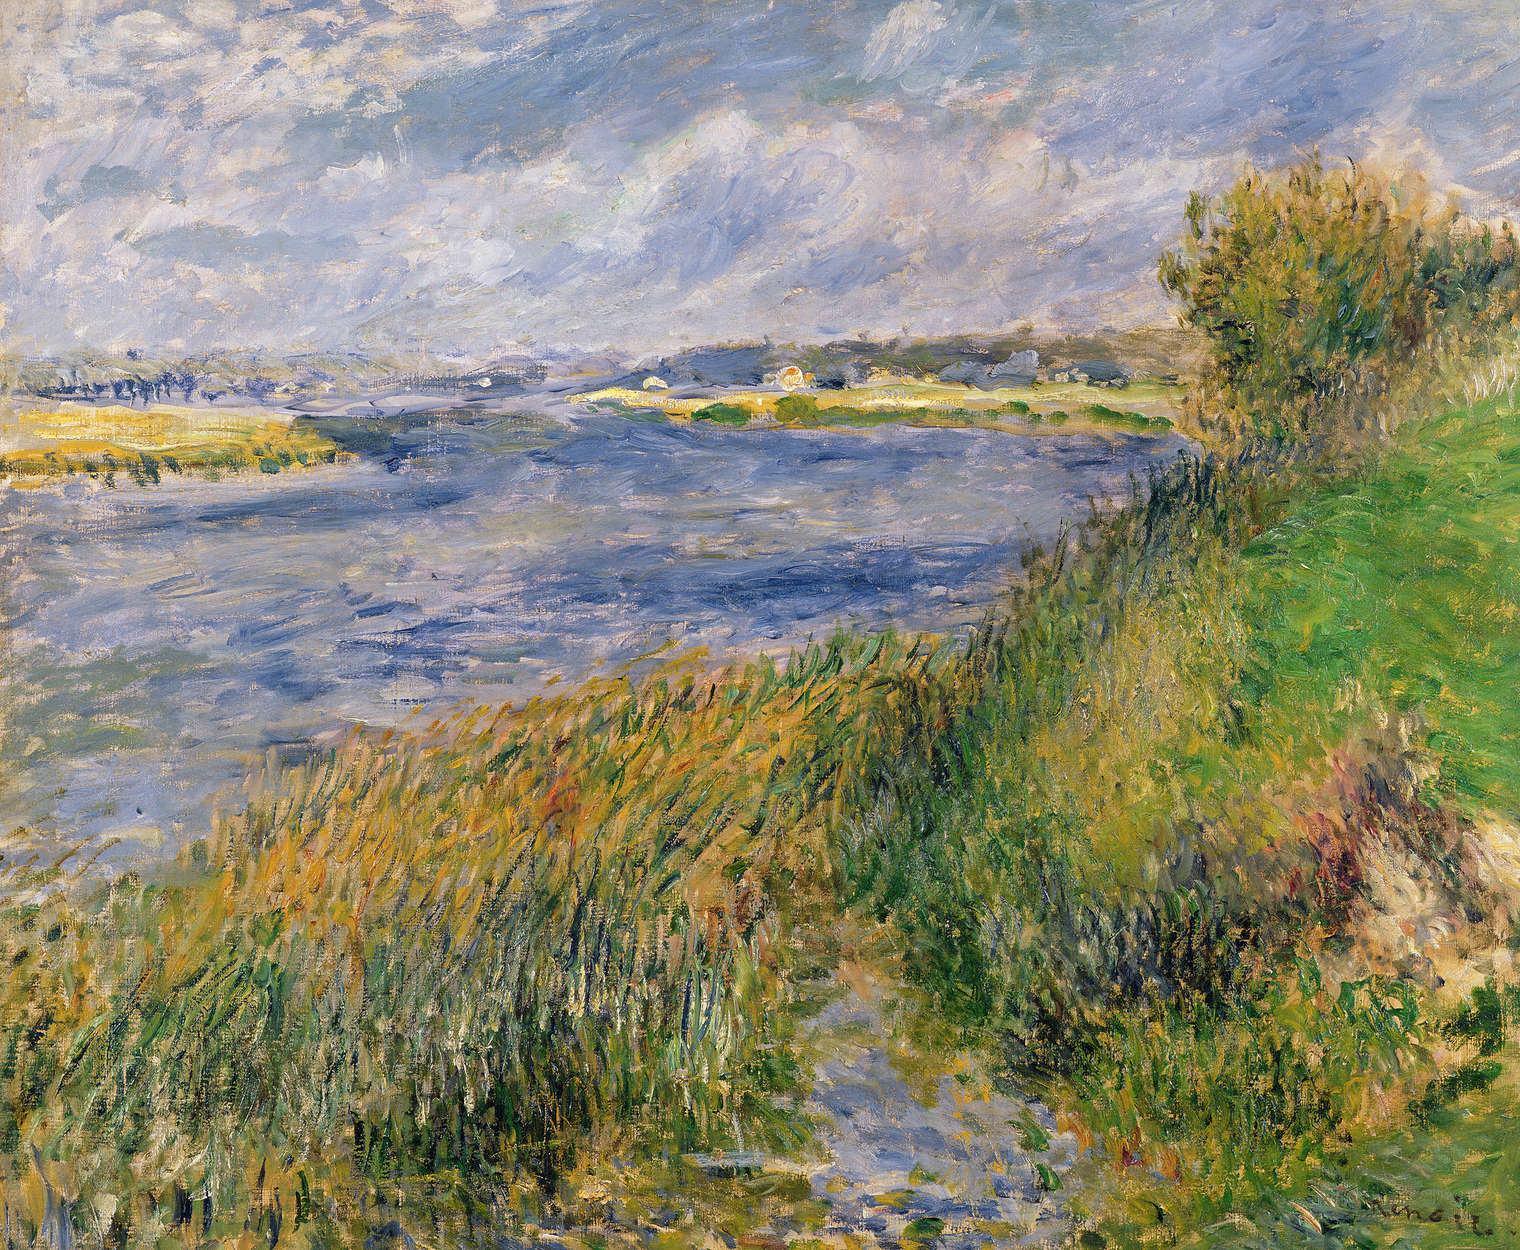             Mural "Las orillas del Sena en Champrosay" de Pierre Auguste Renoir
        